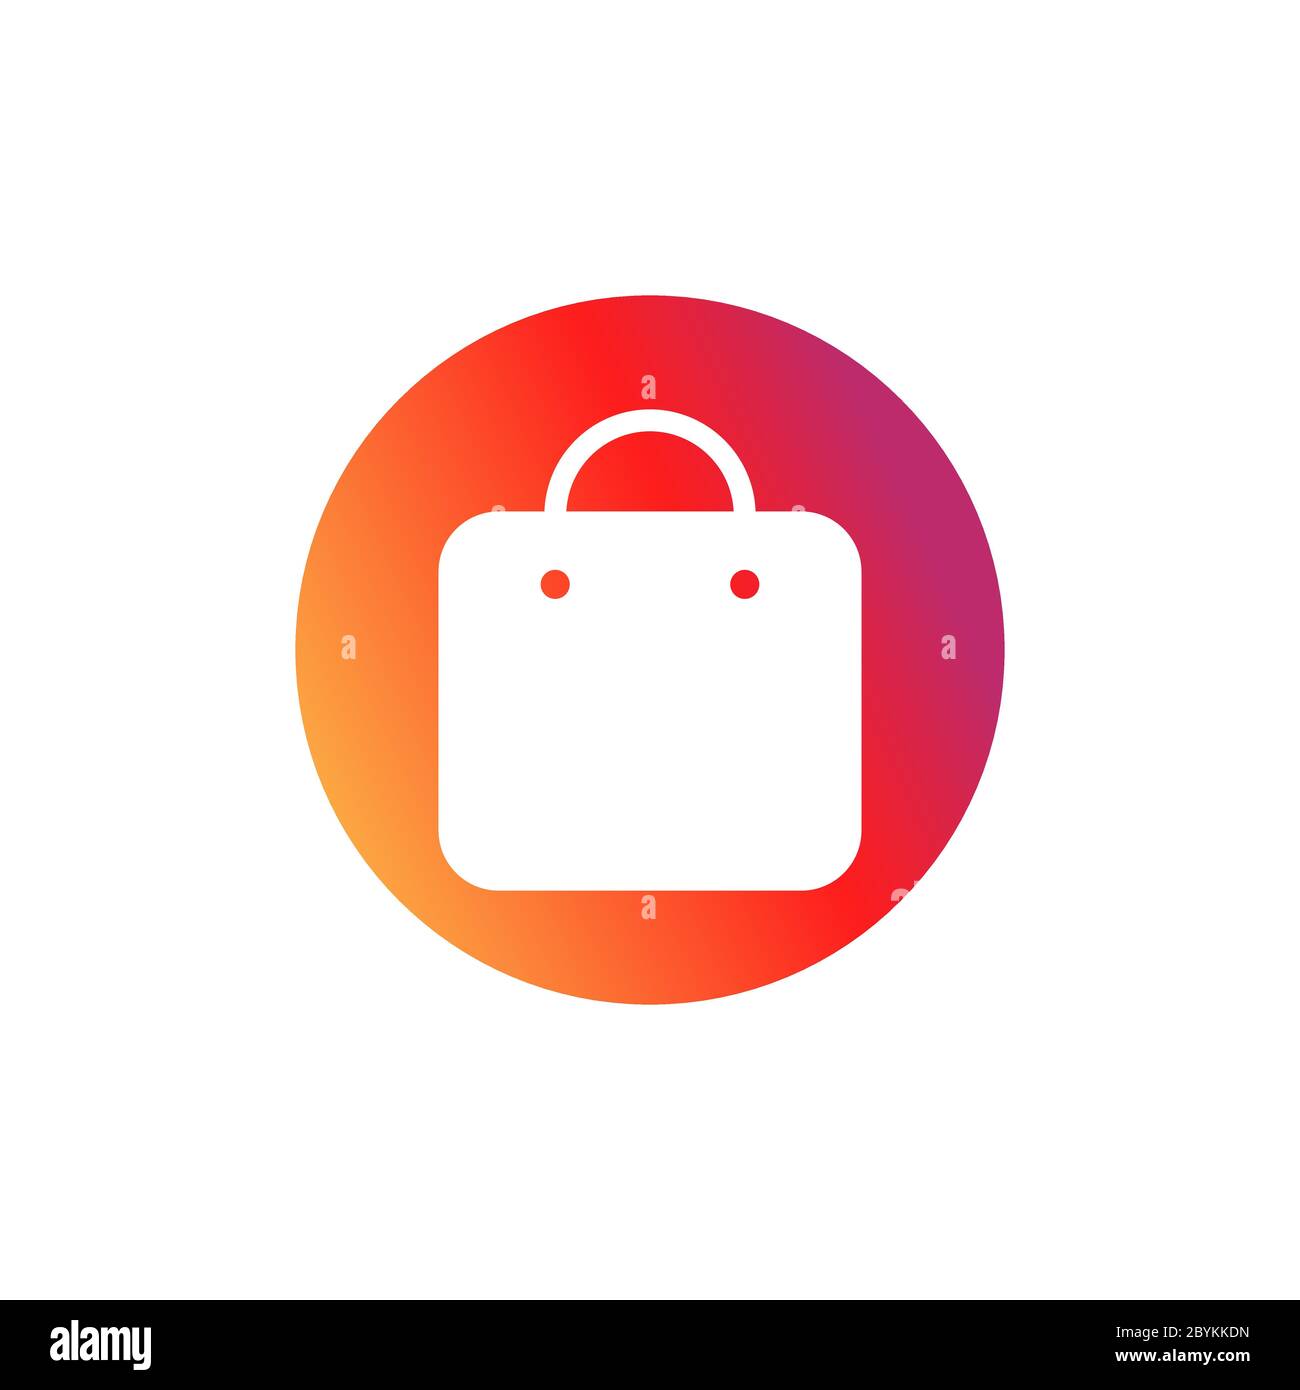 Icona della borsa per la spesa. Pulsante nel social media instagram Concept  per applicazioni, Web, app. Vettore su sfondo bianco isolato. EPS 10  Immagine e Vettoriale - Alamy